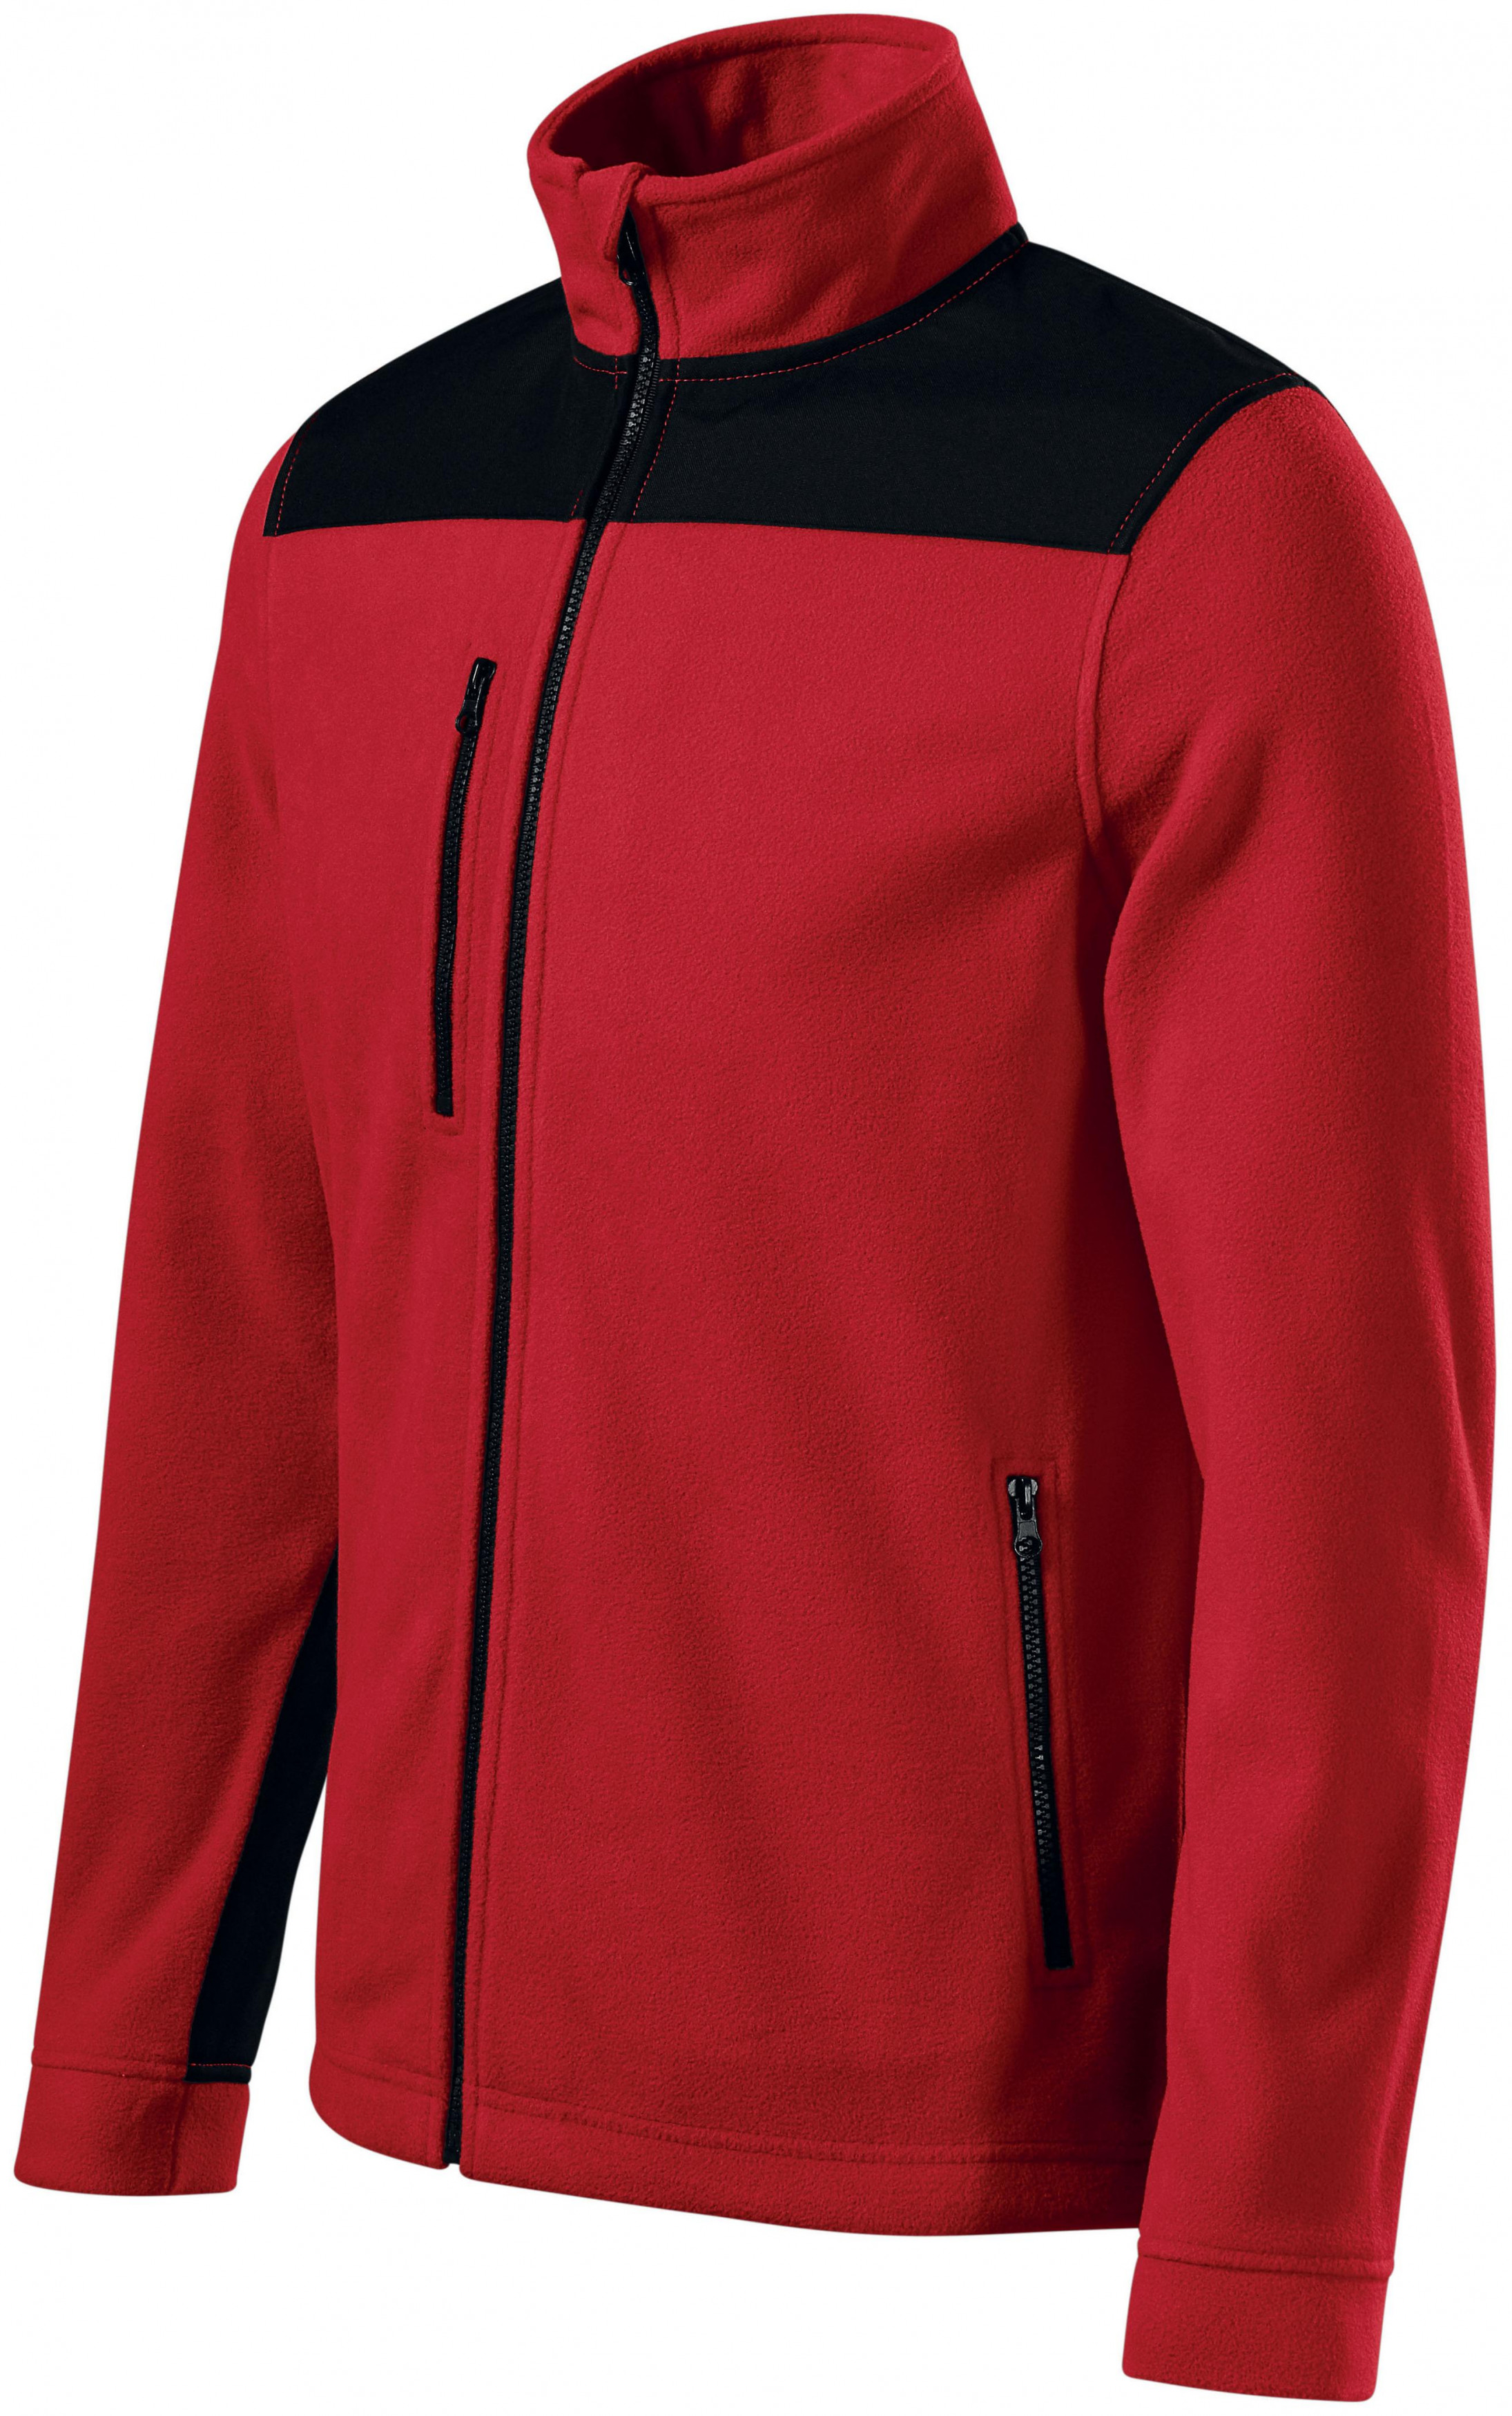 Hrejivá unisex fleecová bunda, červená, XL